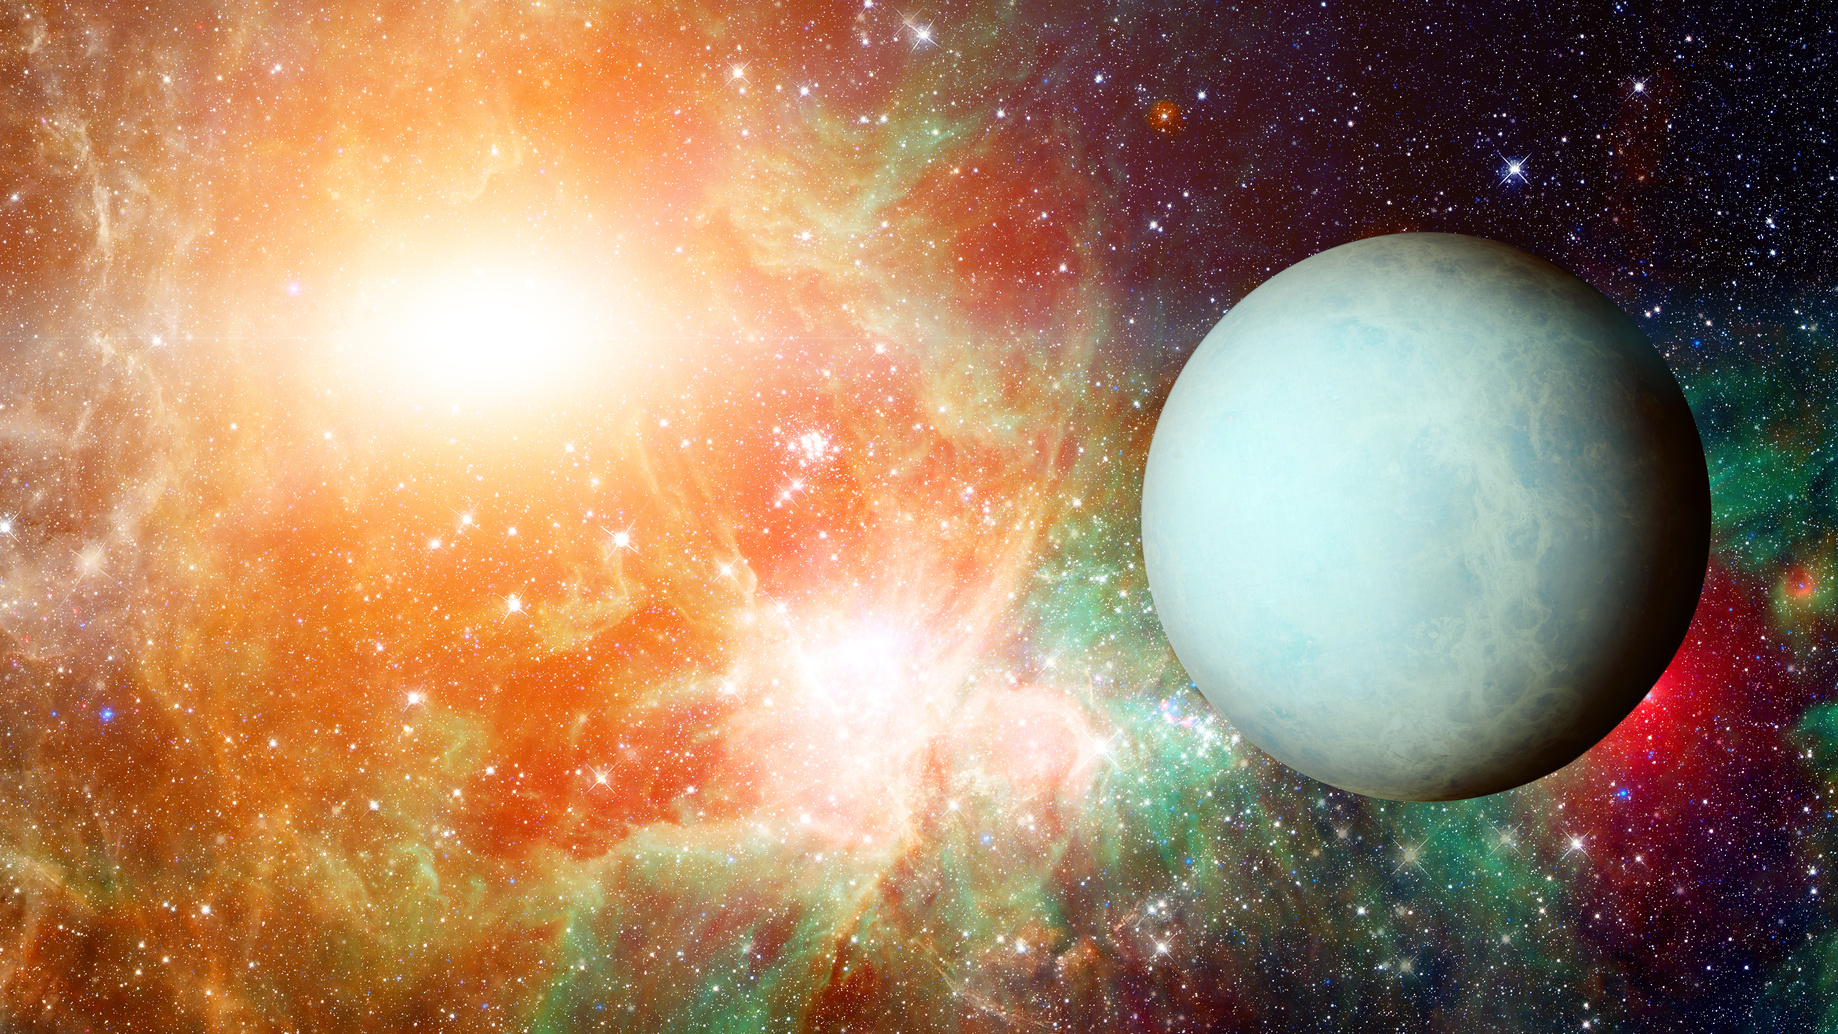 14 Mayıs’ta başlayan 7 yıllık yeni bir döngüden bahsedeceğiz bu yazıda: Uranüs Boğa burcunda.